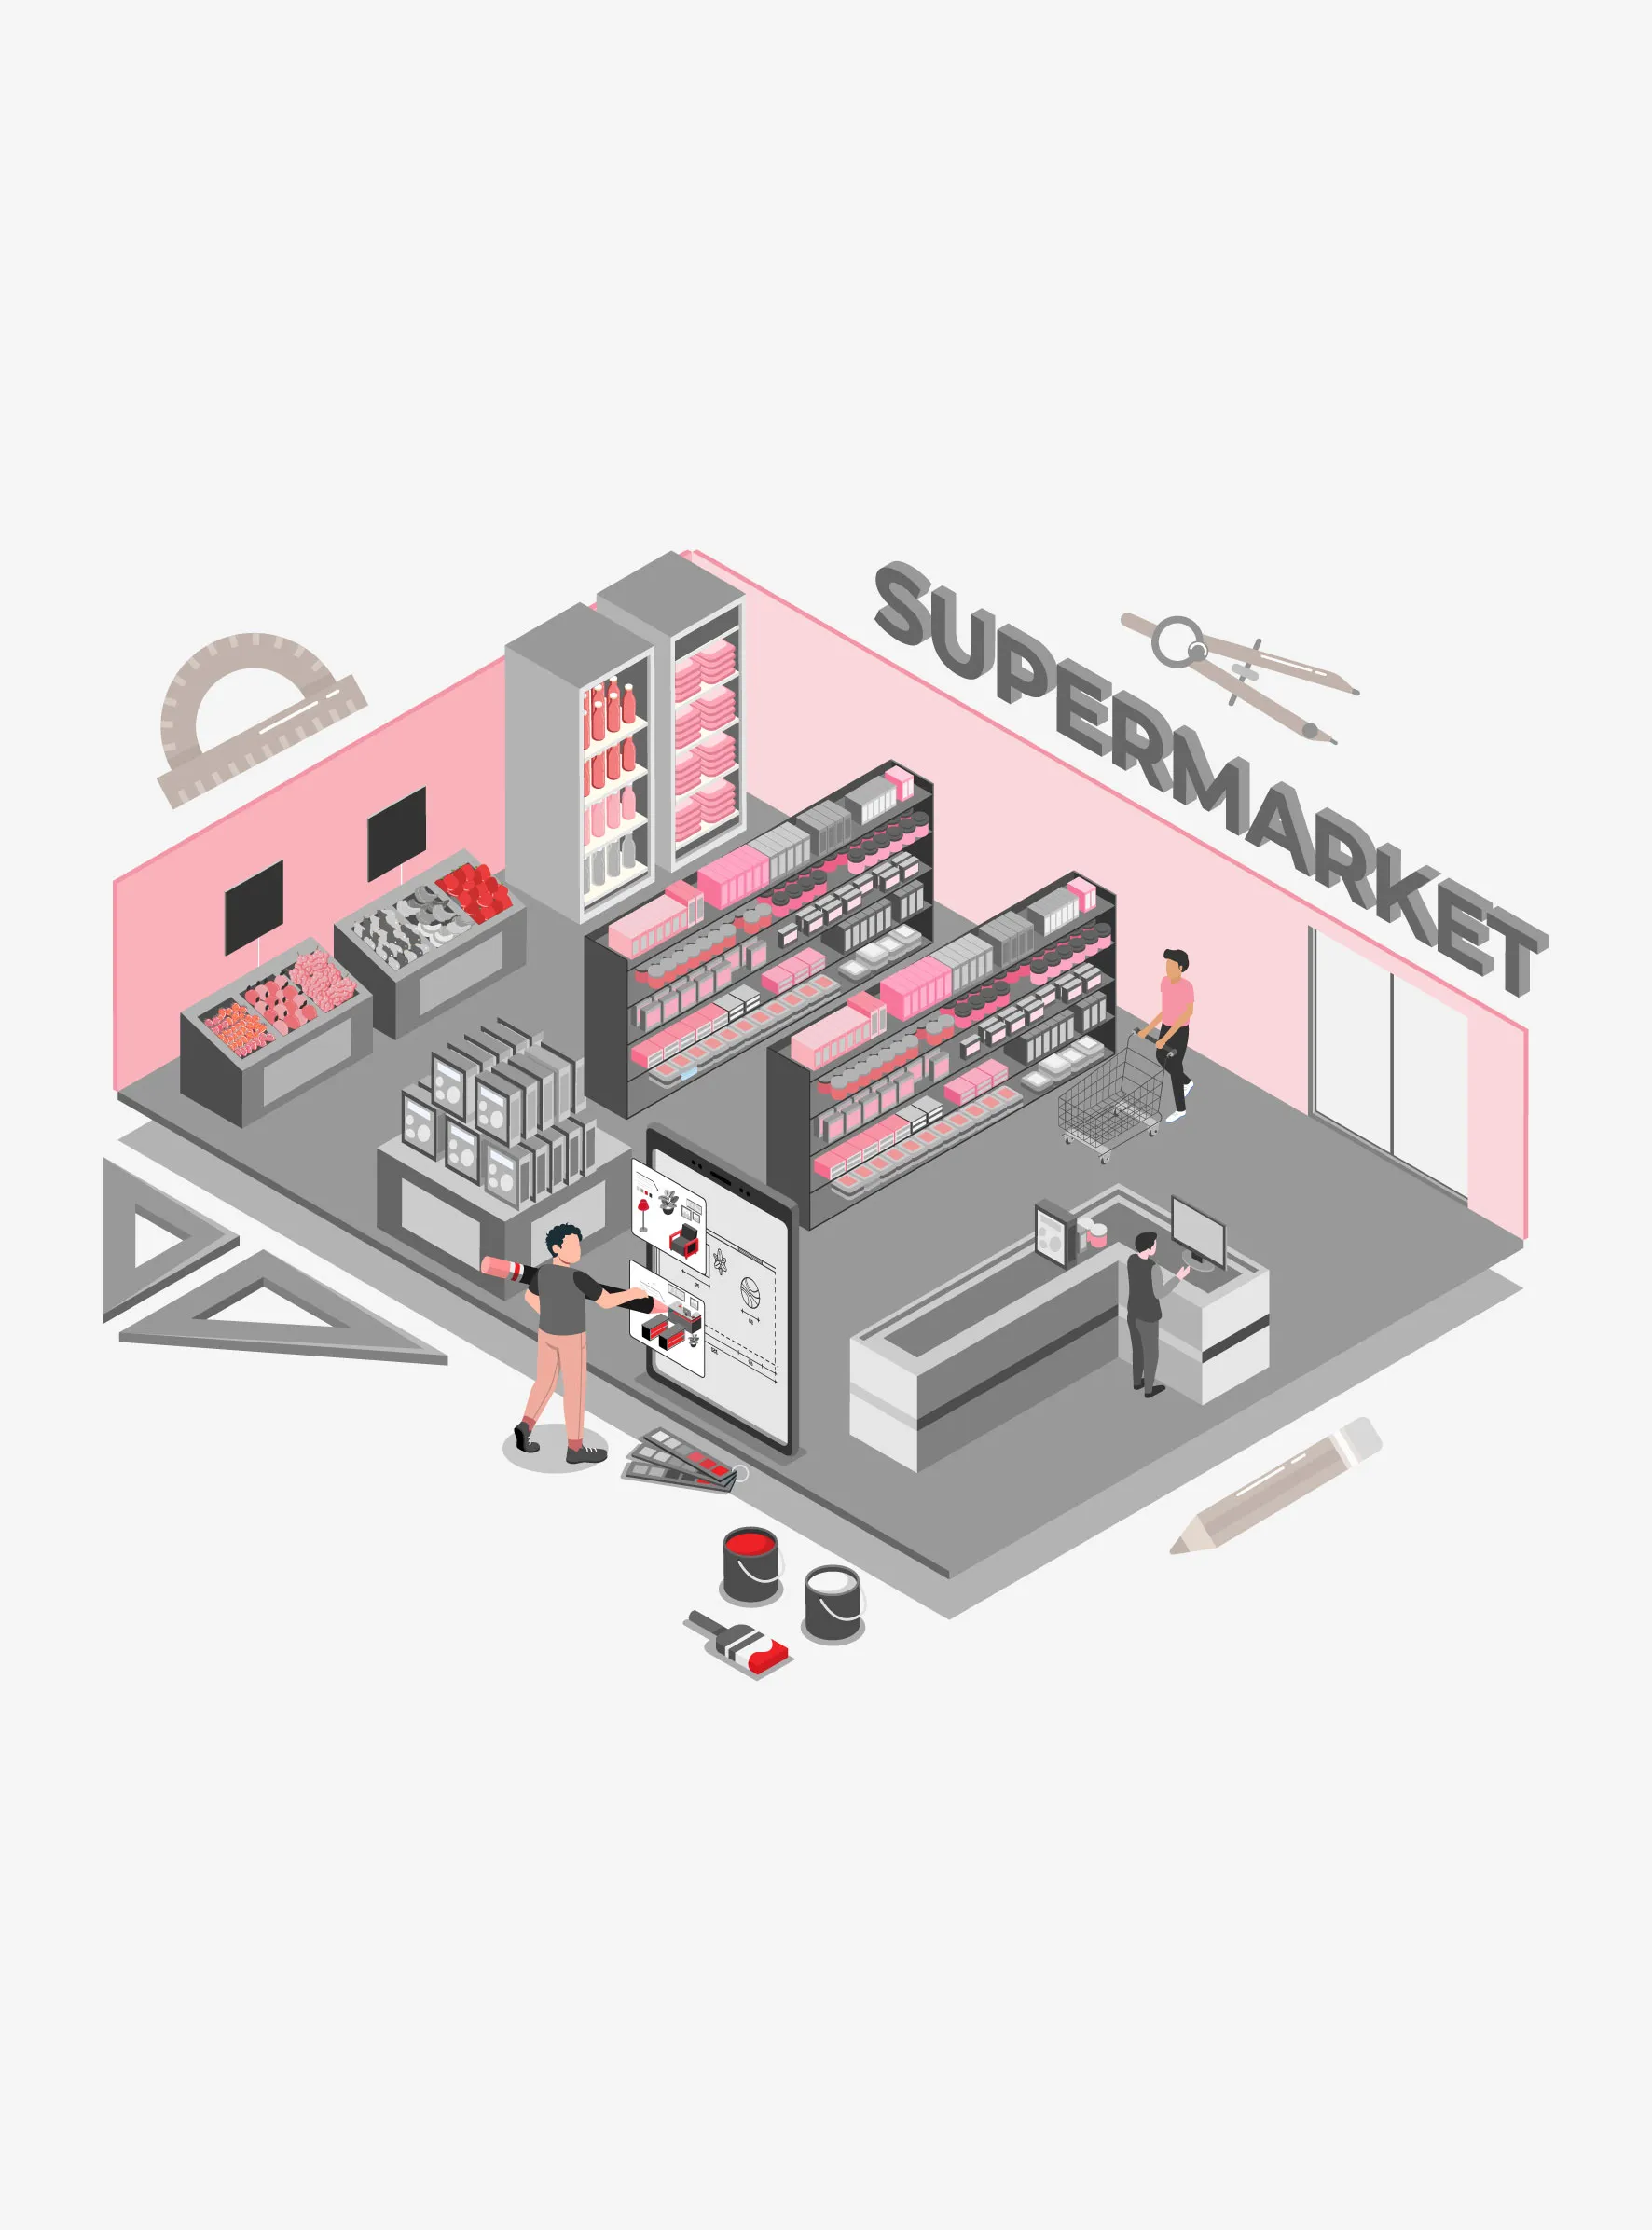 Understanding the science of supermarket design